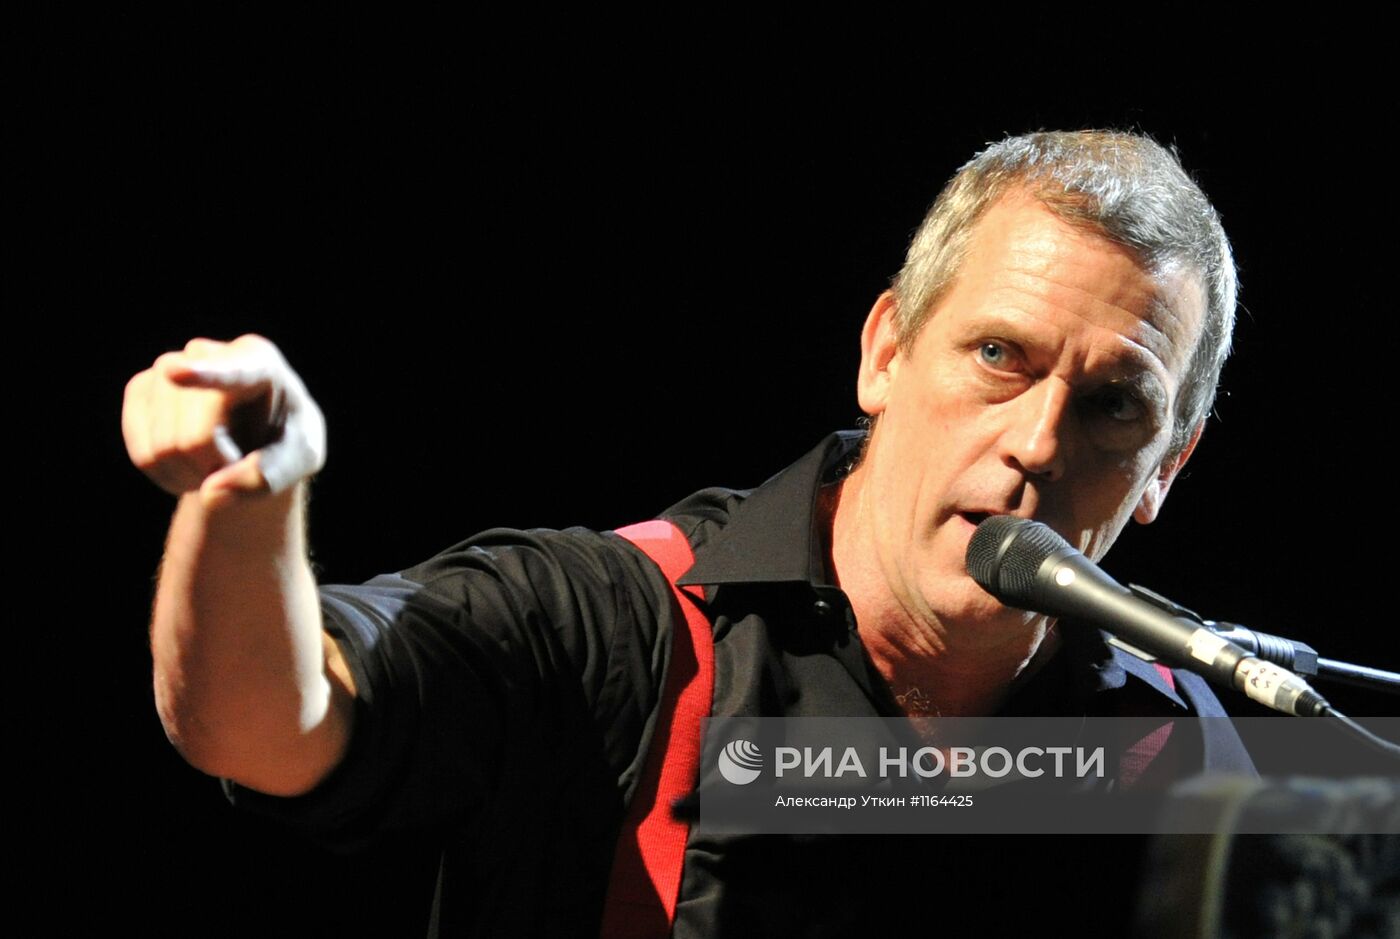 Концерт актера и музыканта Хью Лори в Москве